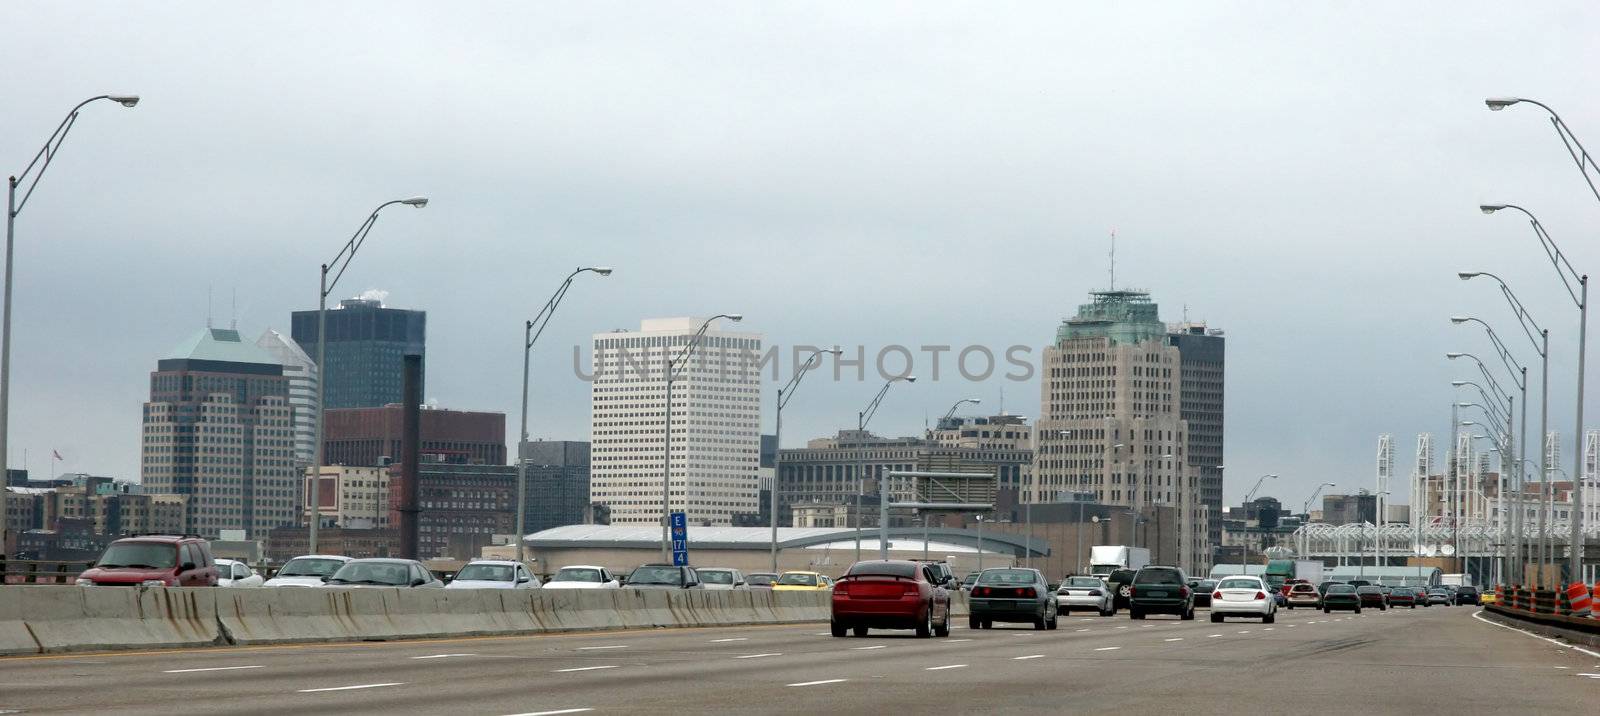 Cleveland, Ohio by vladacanon